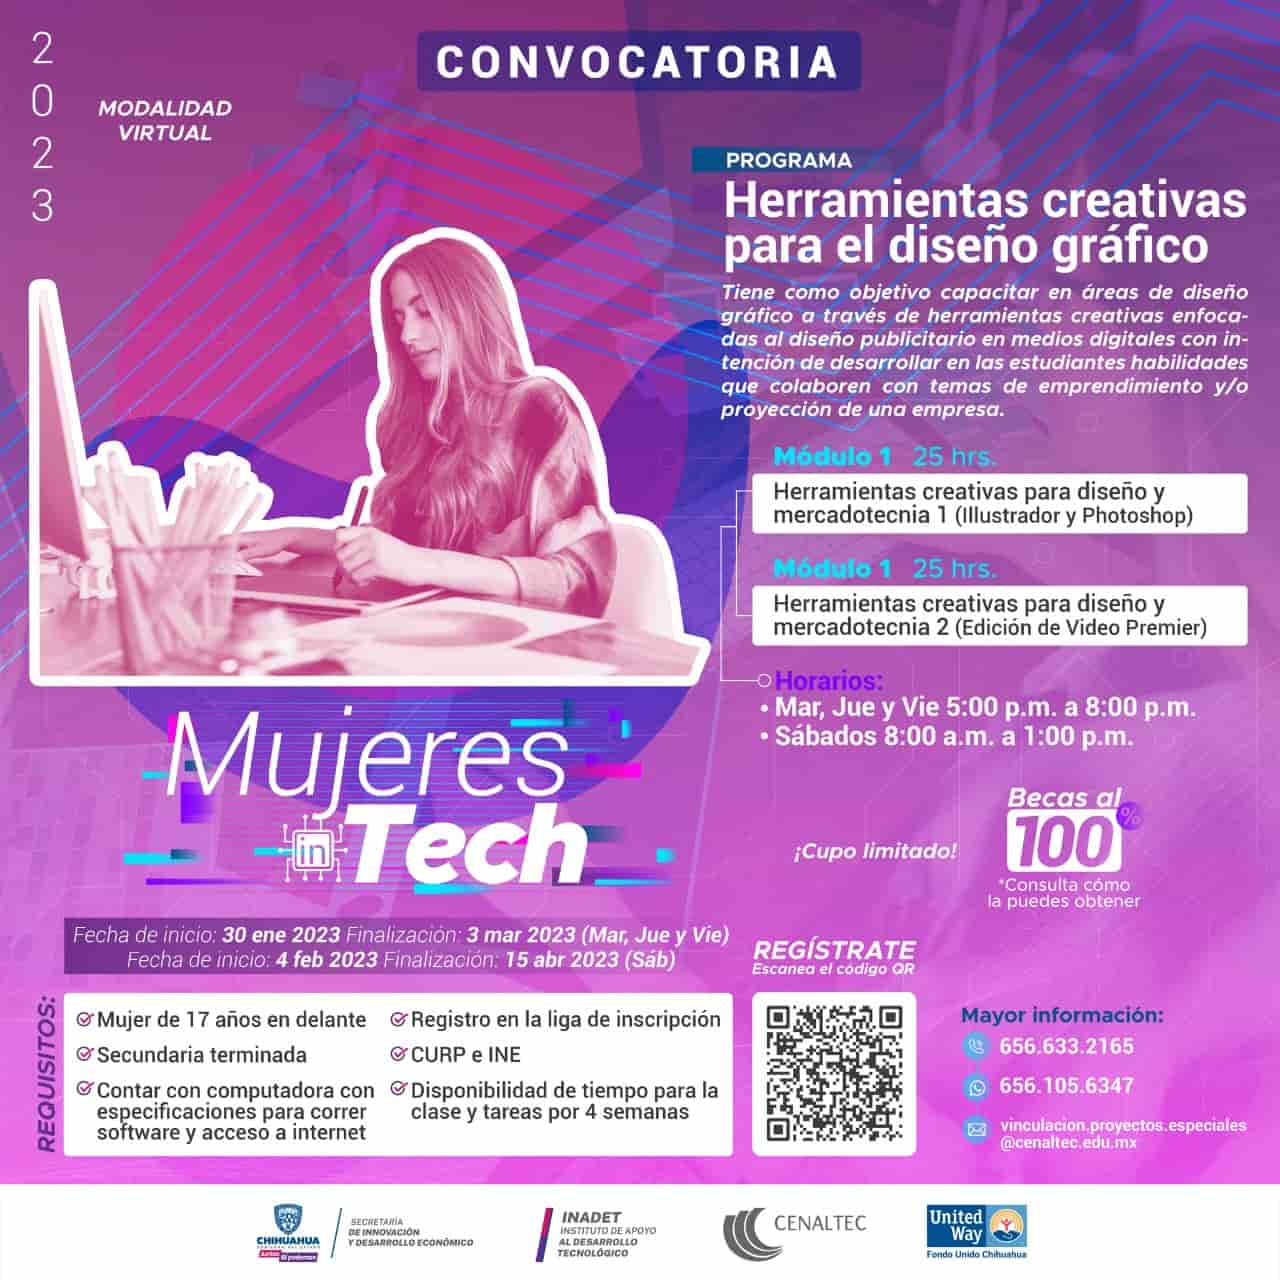 Lanzan Cenaltec y Fondo Unido Chihuahua convocatoria para capacitar a mujeres en el sector tecnológico